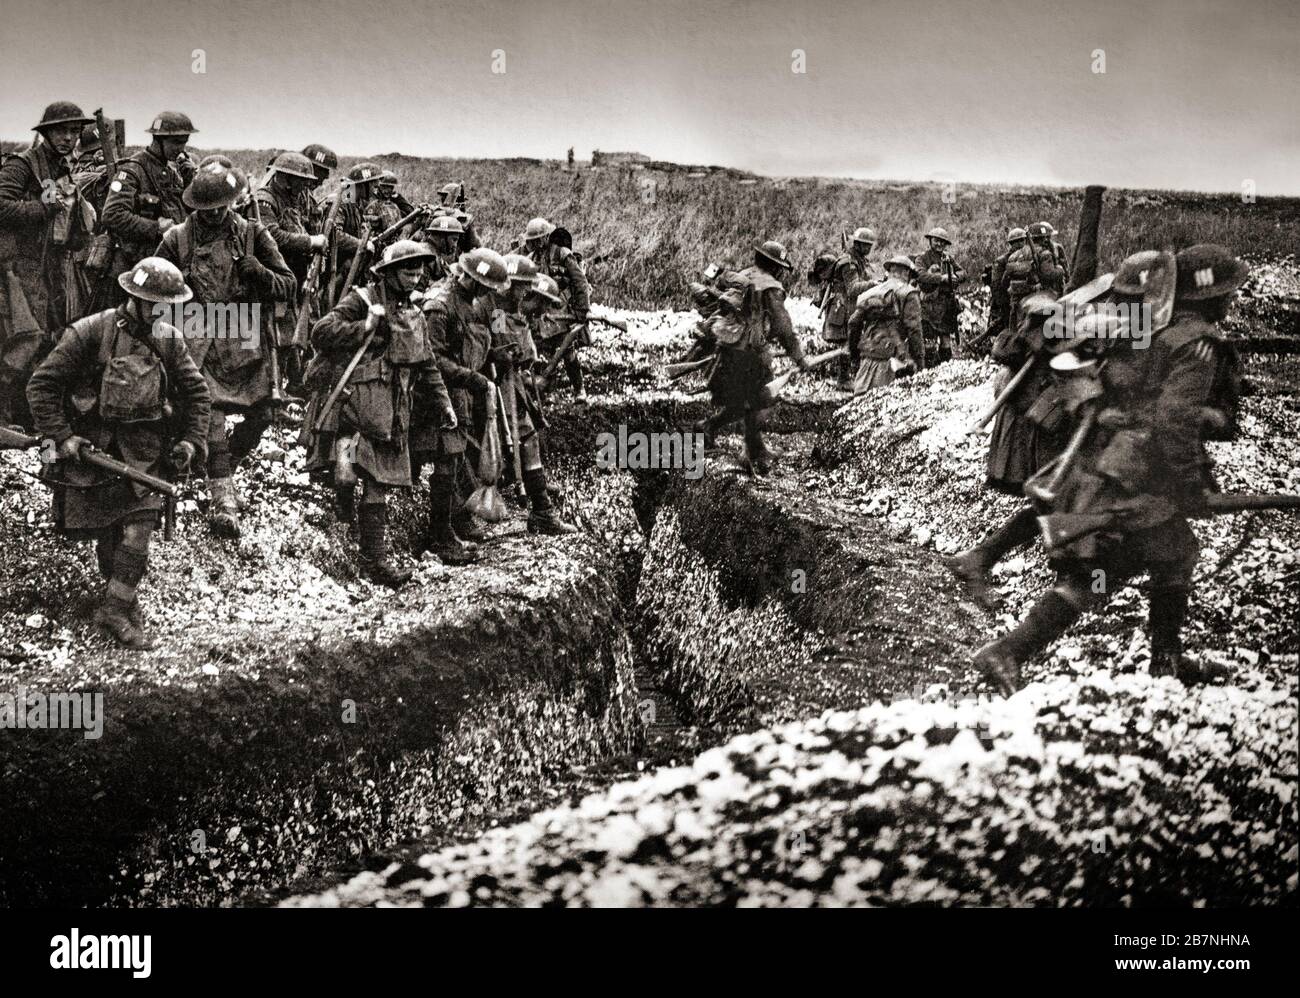 Kilted Soldaten der Gordon Highlanders, die am ersten Tag der Schlacht von Cambrai, 1917, einen Graben überquerten. Cambrai, im Norden des Departements Nord, war ein wichtiger Versorgungspunkt für die deutsche Hindenburg-Linie und die Einnahme der Stadt und des nahen Bourlon-Höhenzugs würde das Heck der deutschen Linie nach Norden bedrohen. Stockfoto